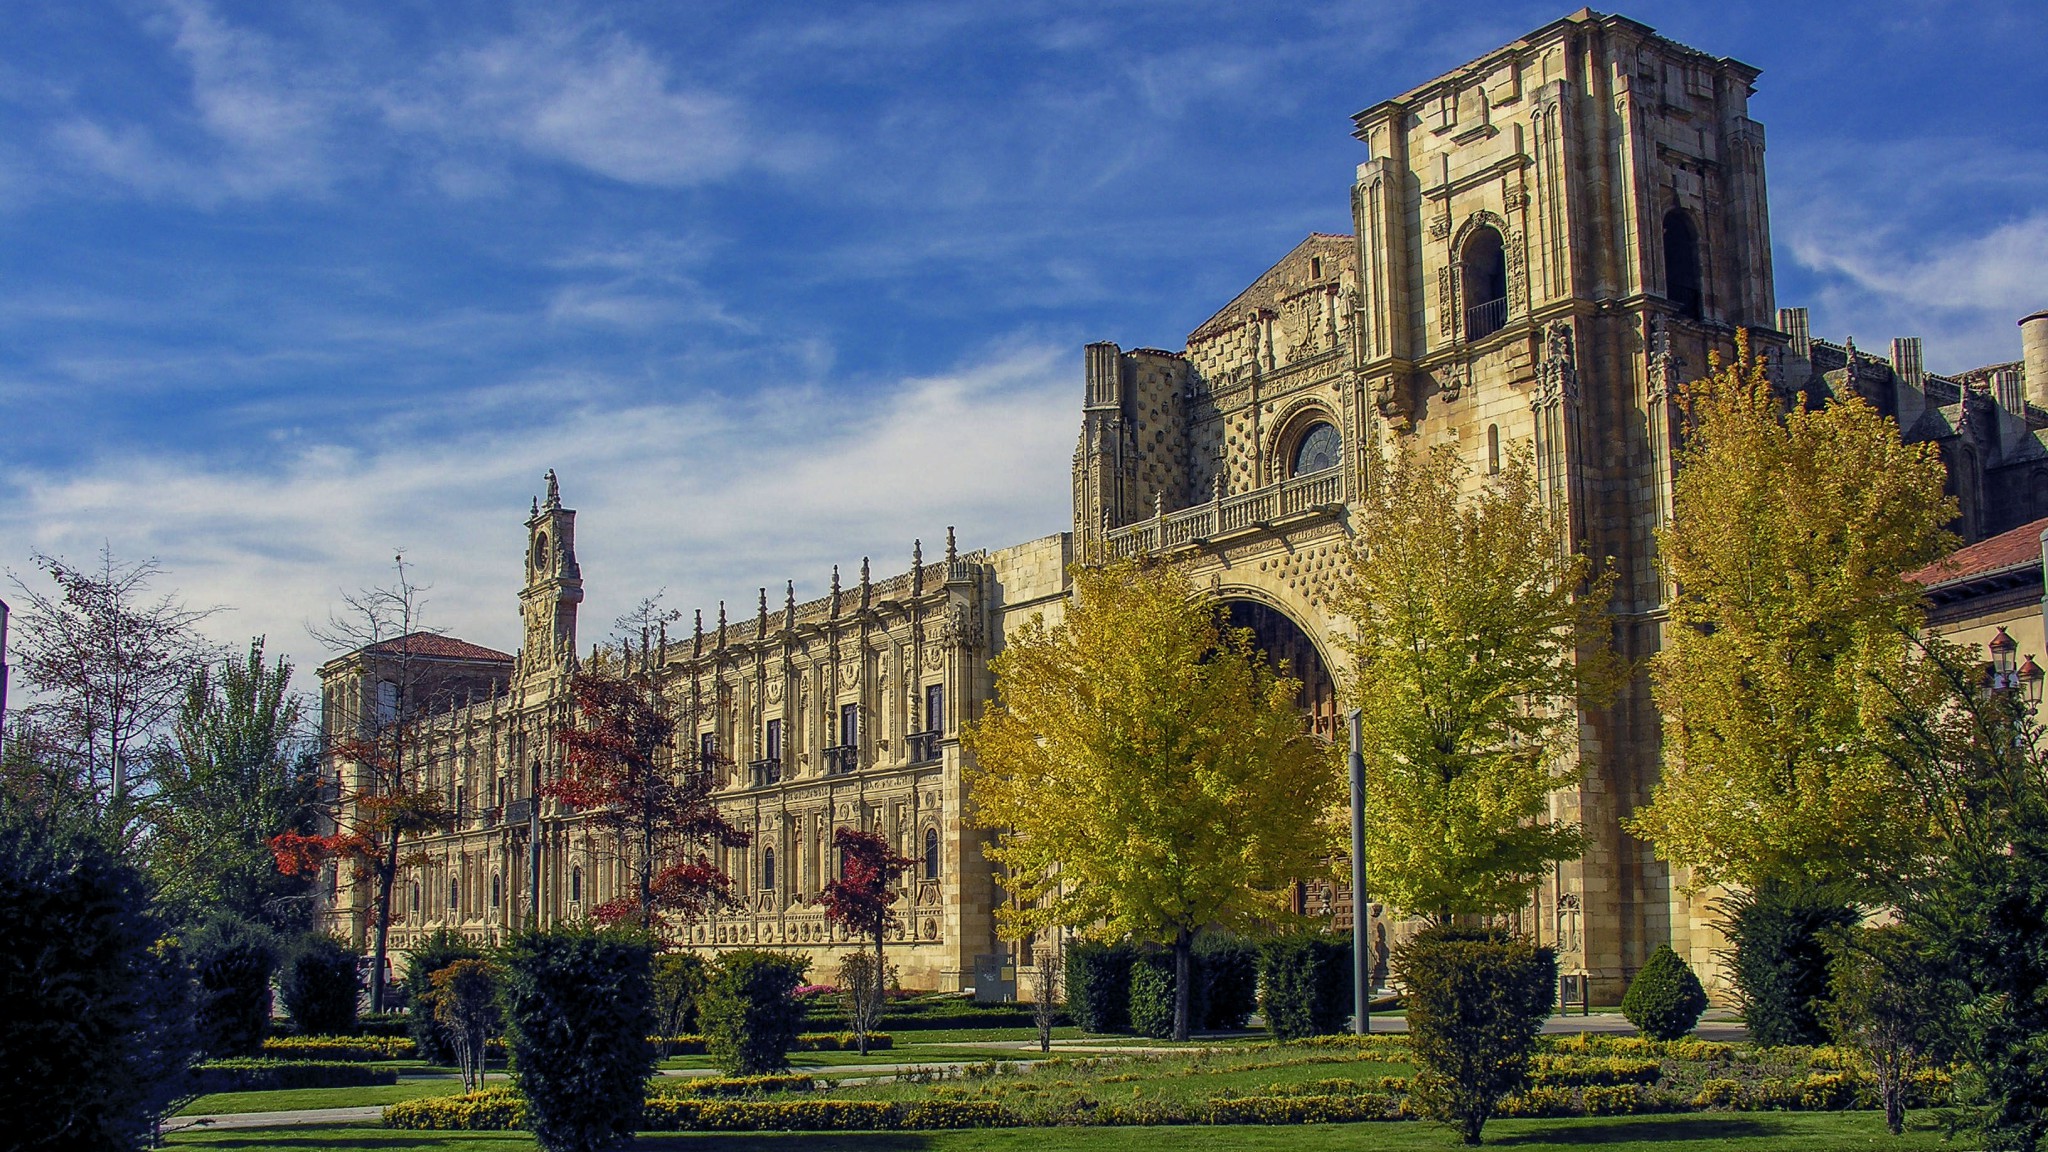 Hostal de San Marcos - Catedral de León - Qué ver en León y alrededores